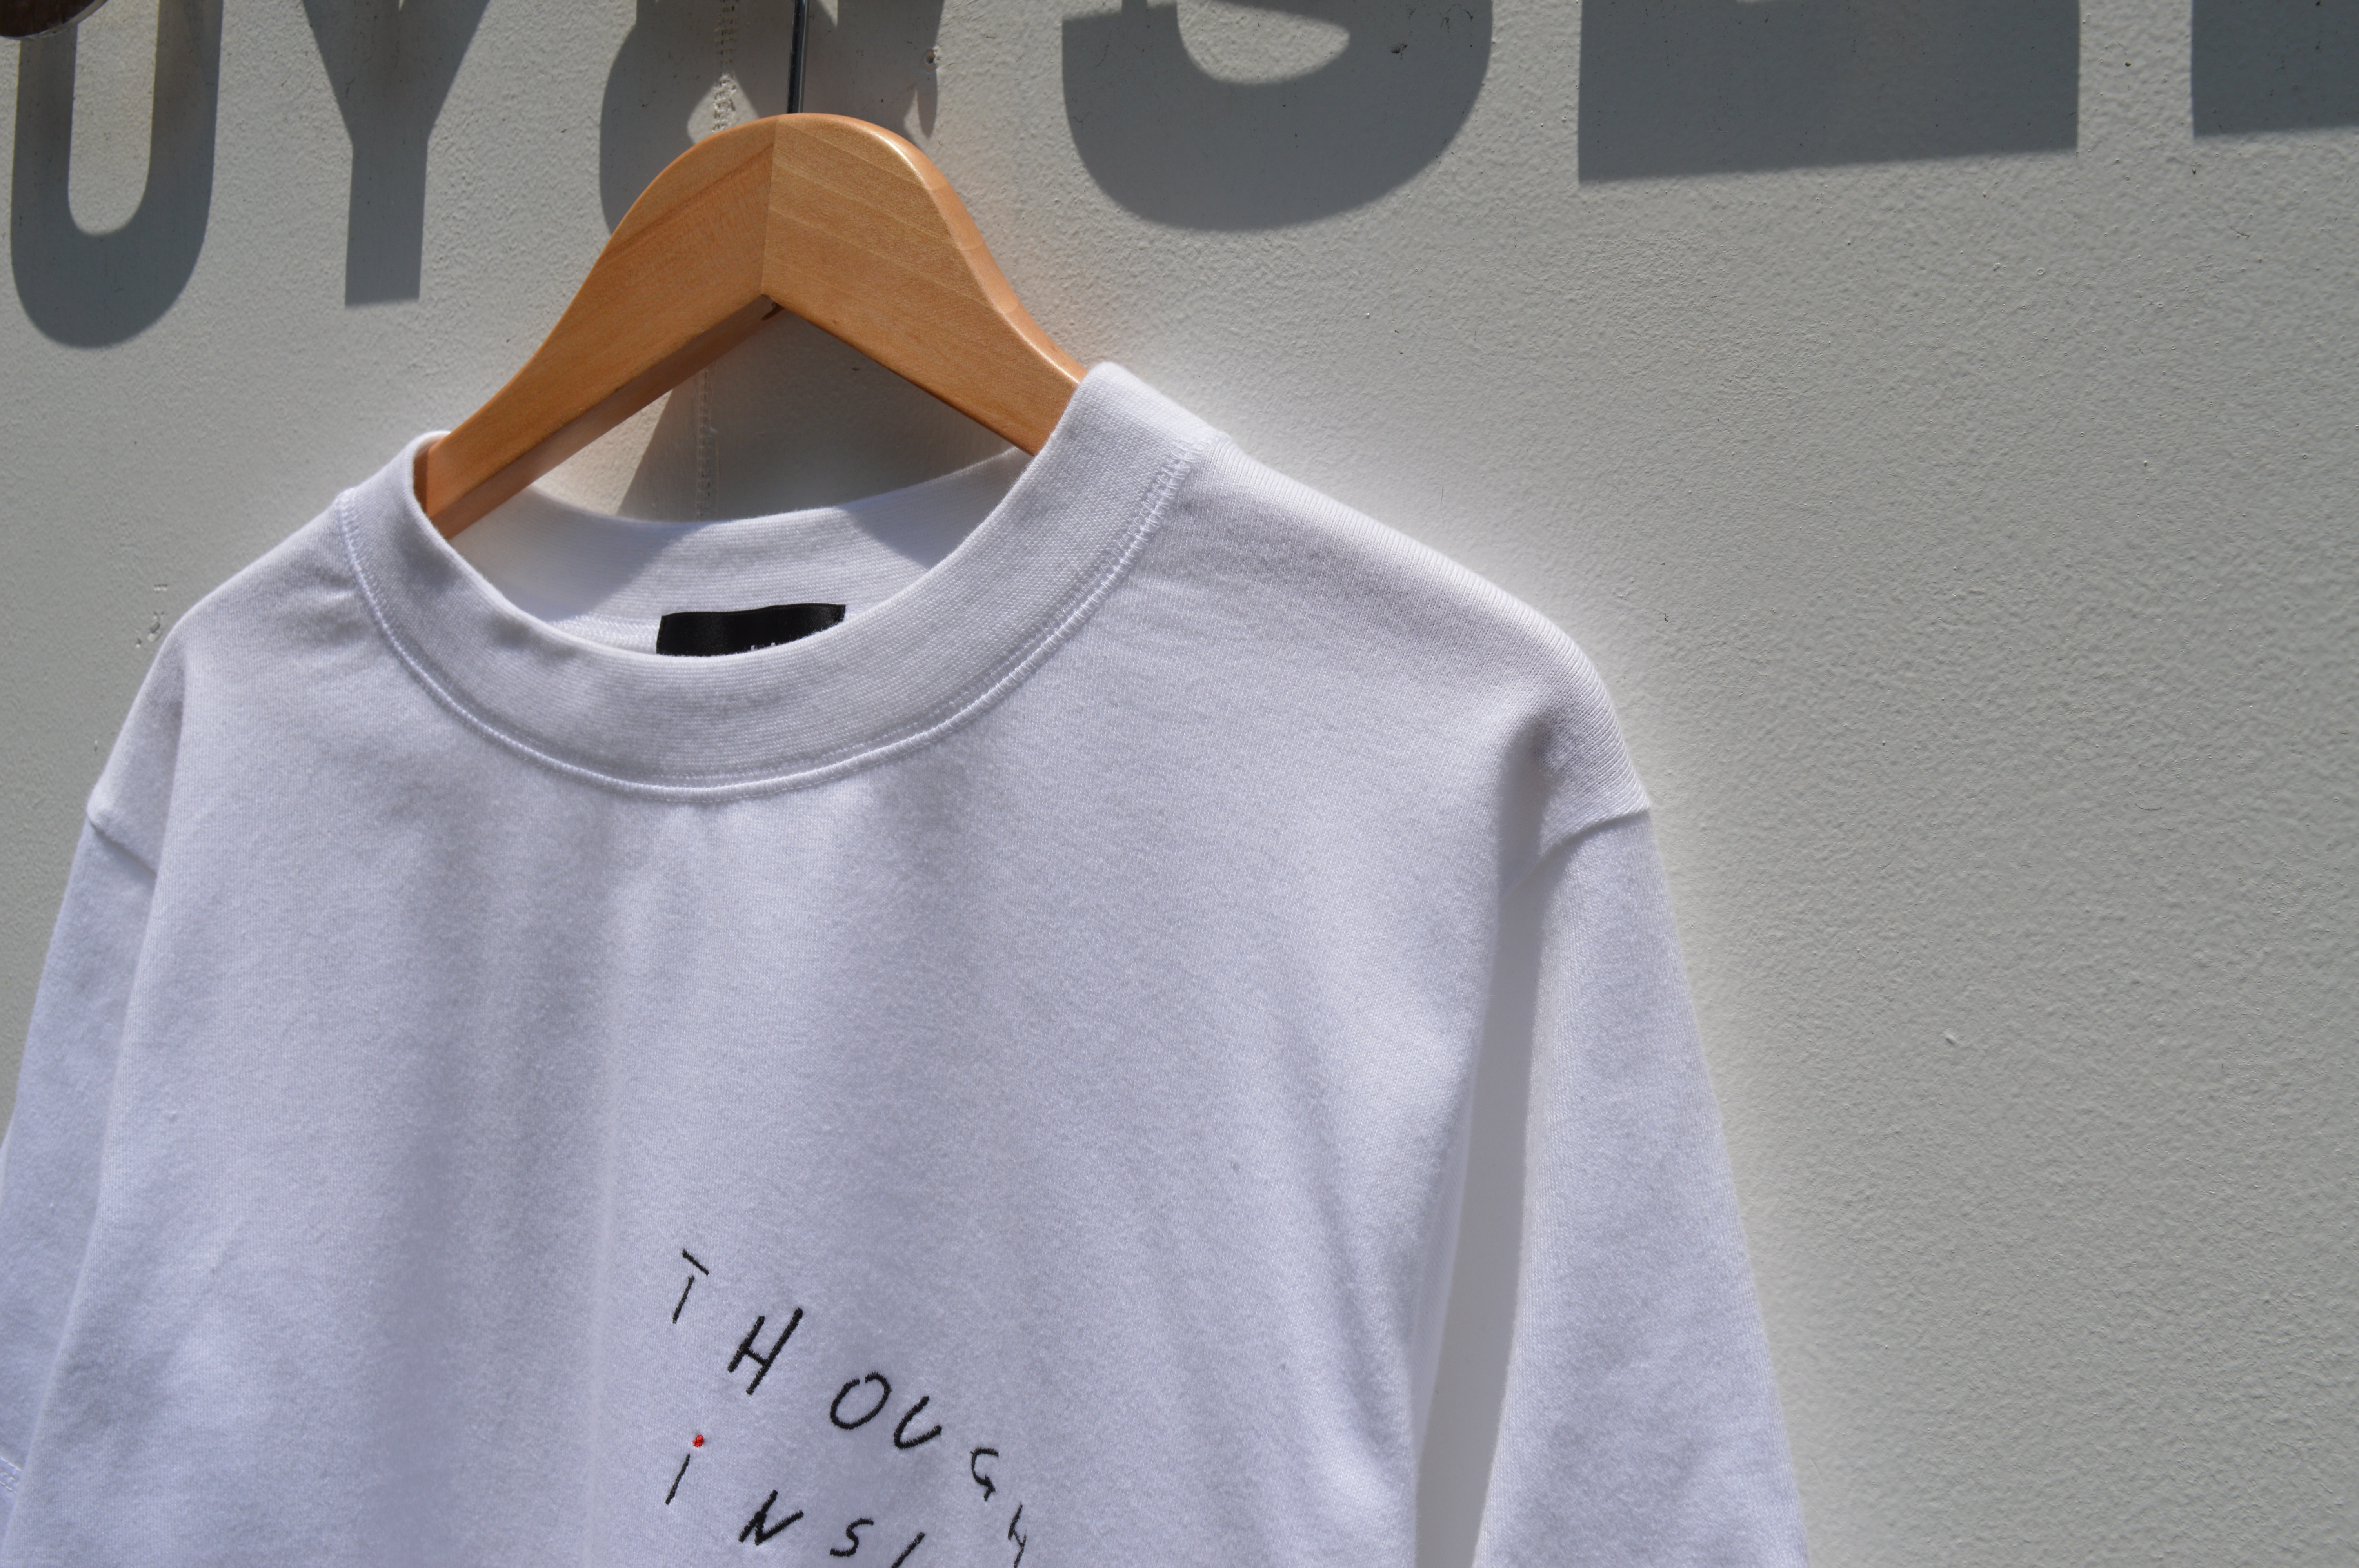 通販日本 SODUK 2019AW 'THOUGHTS INSIDE' レイヤードTシャツ Tシャツ/カットソー(七分/長袖)